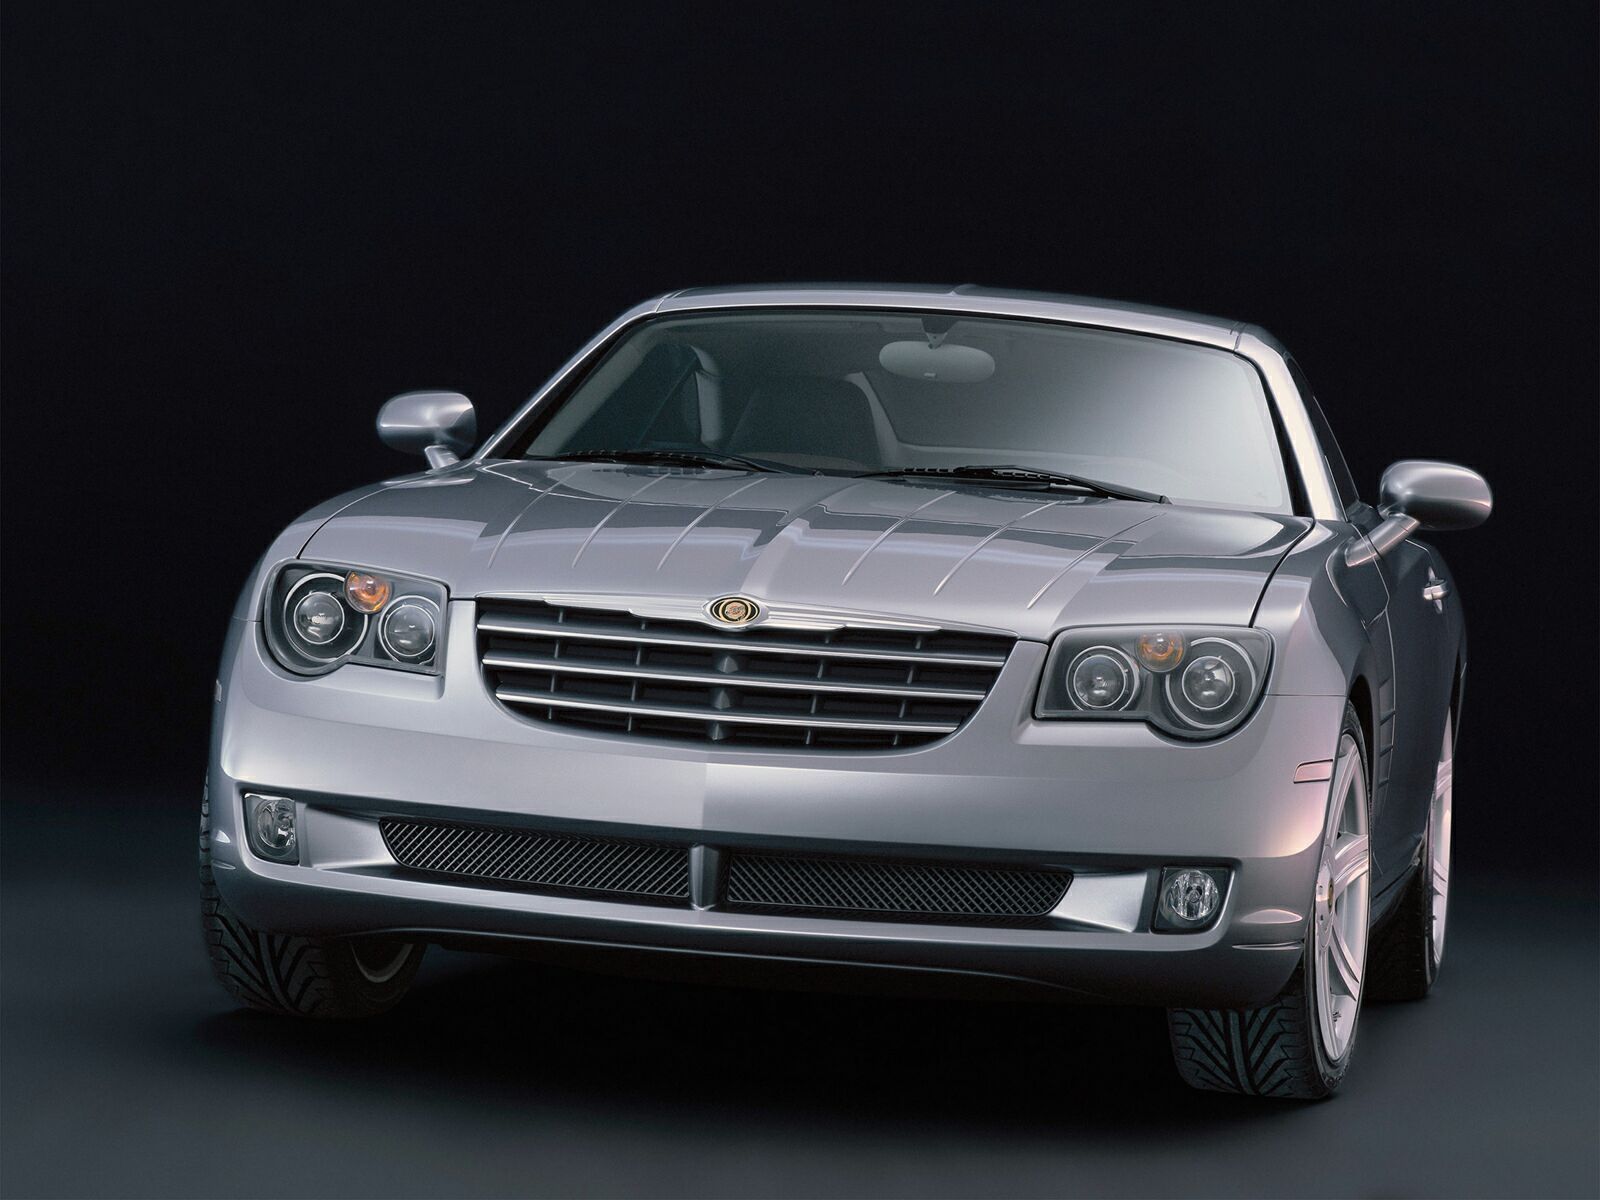 2003 Chrysler Crossfire